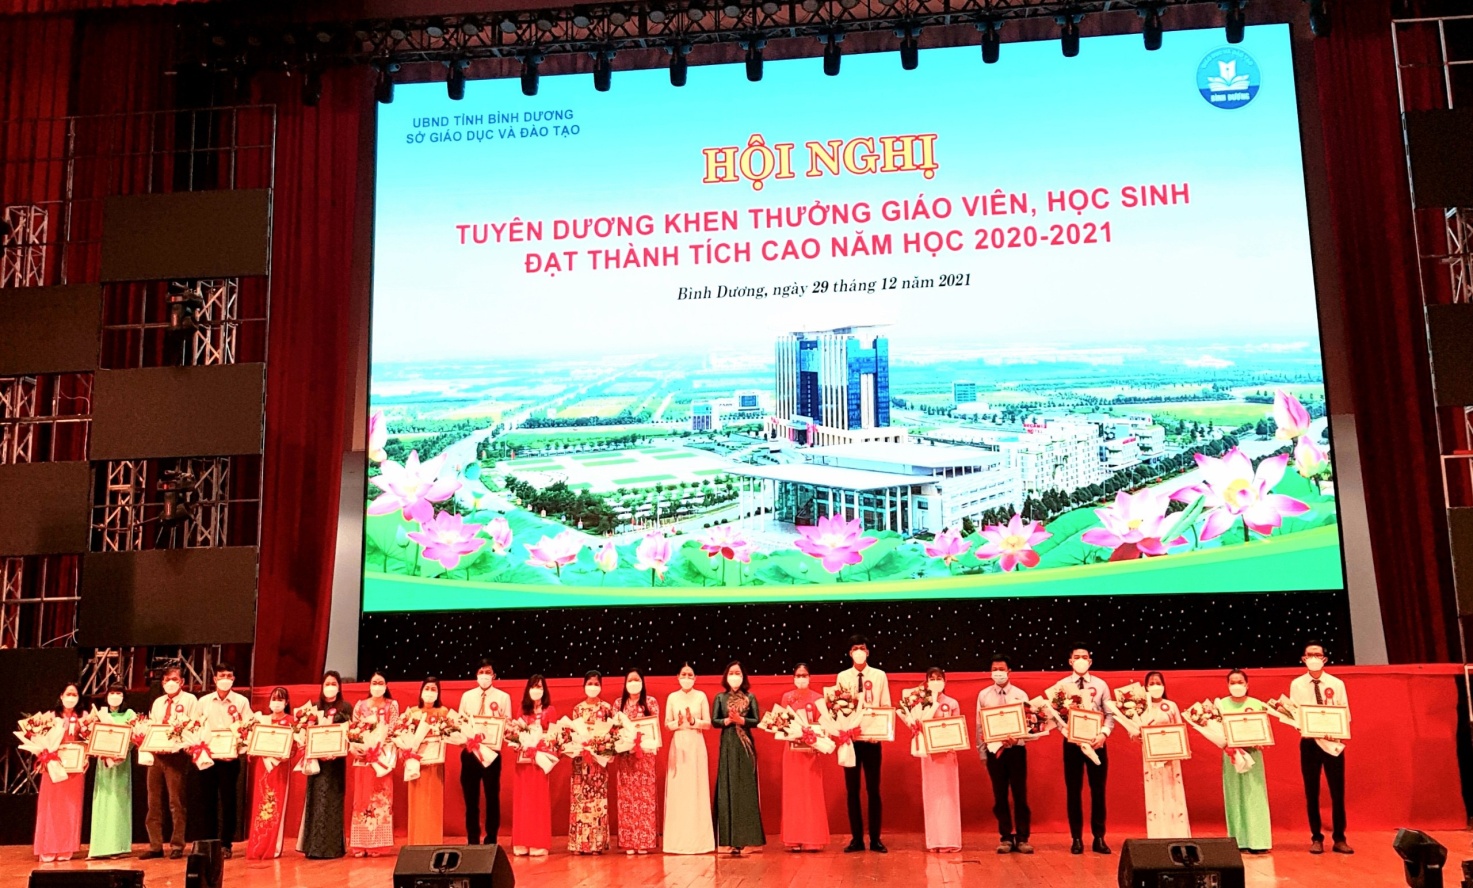 Giáo viên trường THCS Chu Văn An, thành phố Thủ Dầu Một dự Hội nghị tuyên dương khen thưởng giáo viên, học sinh đạt thành tích cao năm học 2020 - 2021